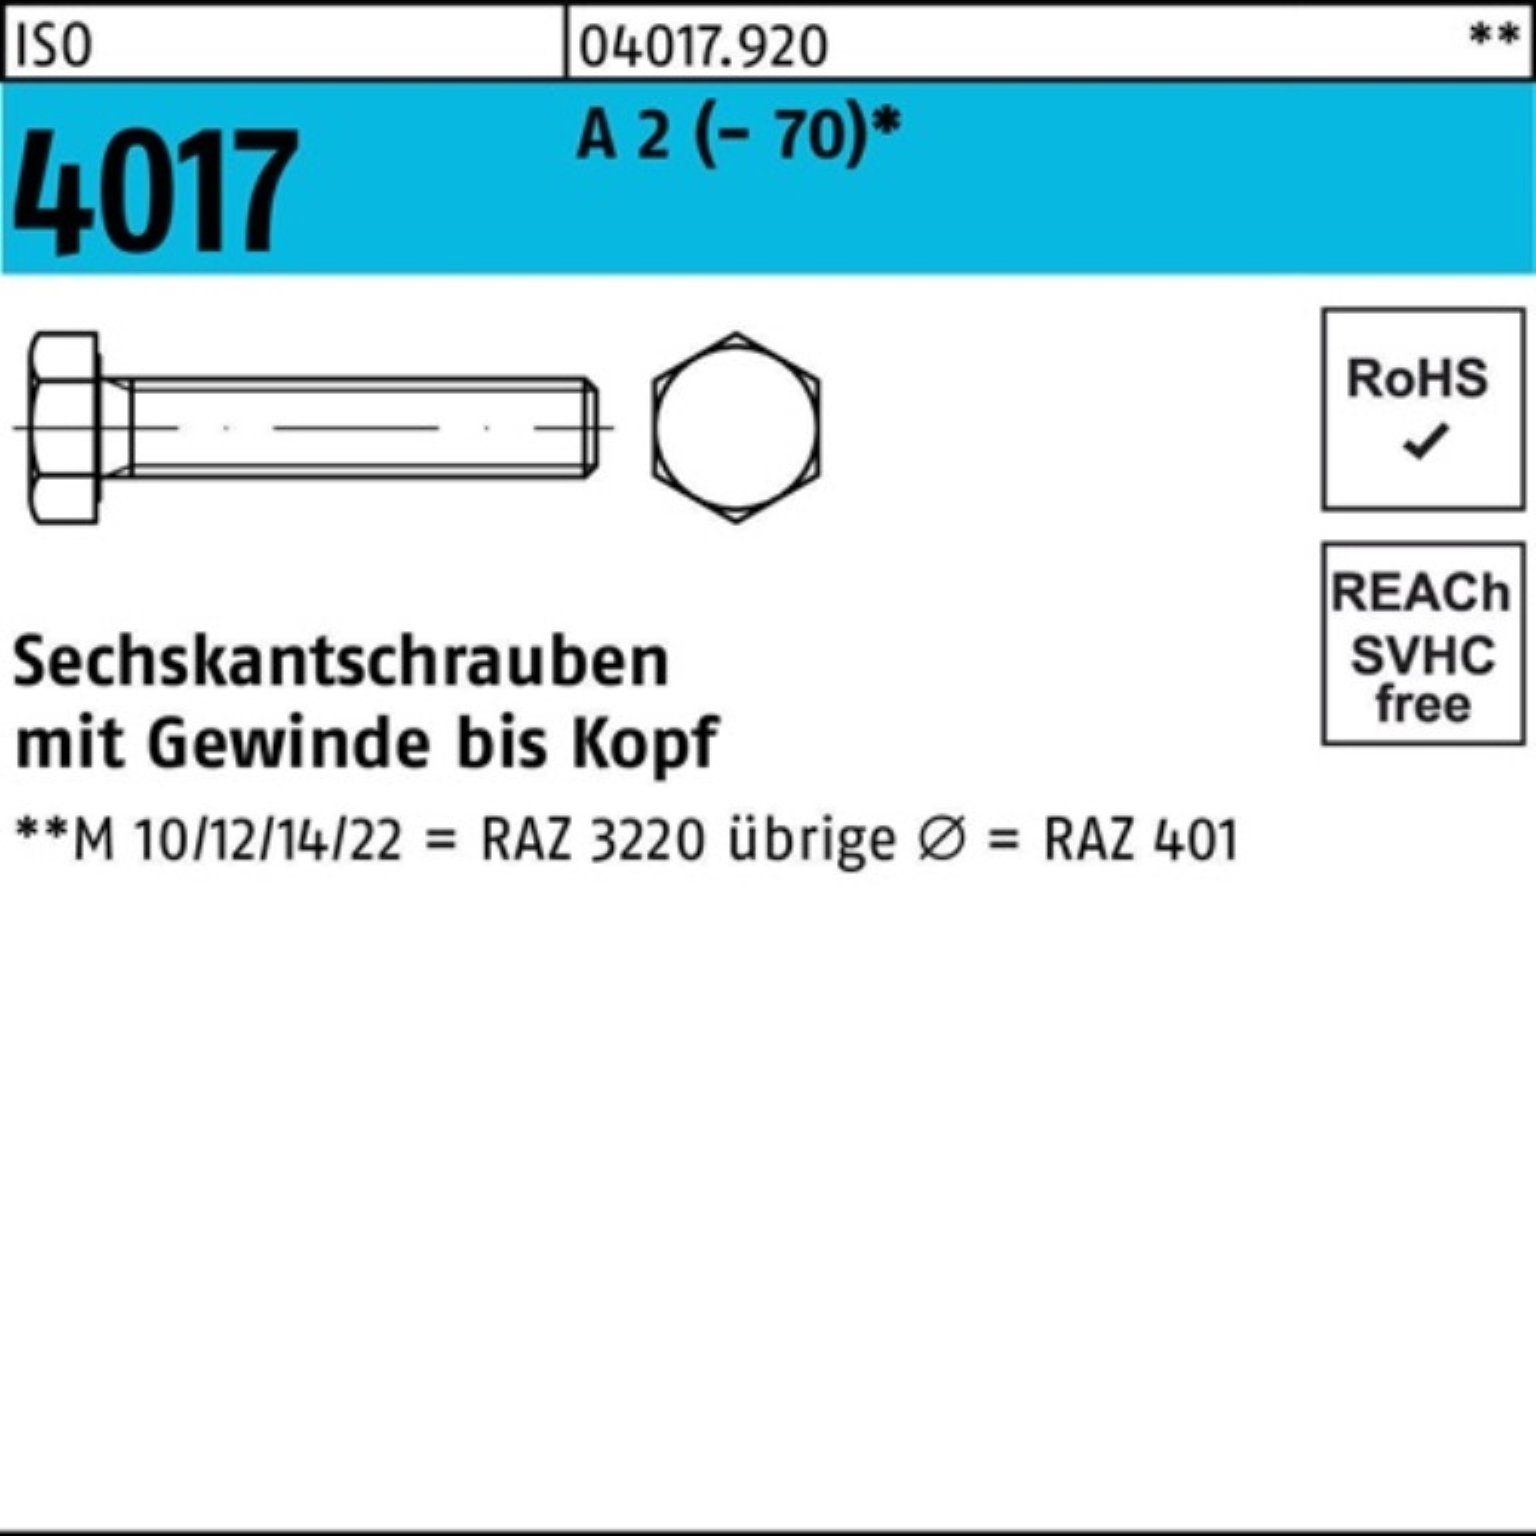 Bufab Sechskantschraube 100er 2 VG 25 A 75 (70) 4017 M16x ISO Stück Pack Sechskantschraube